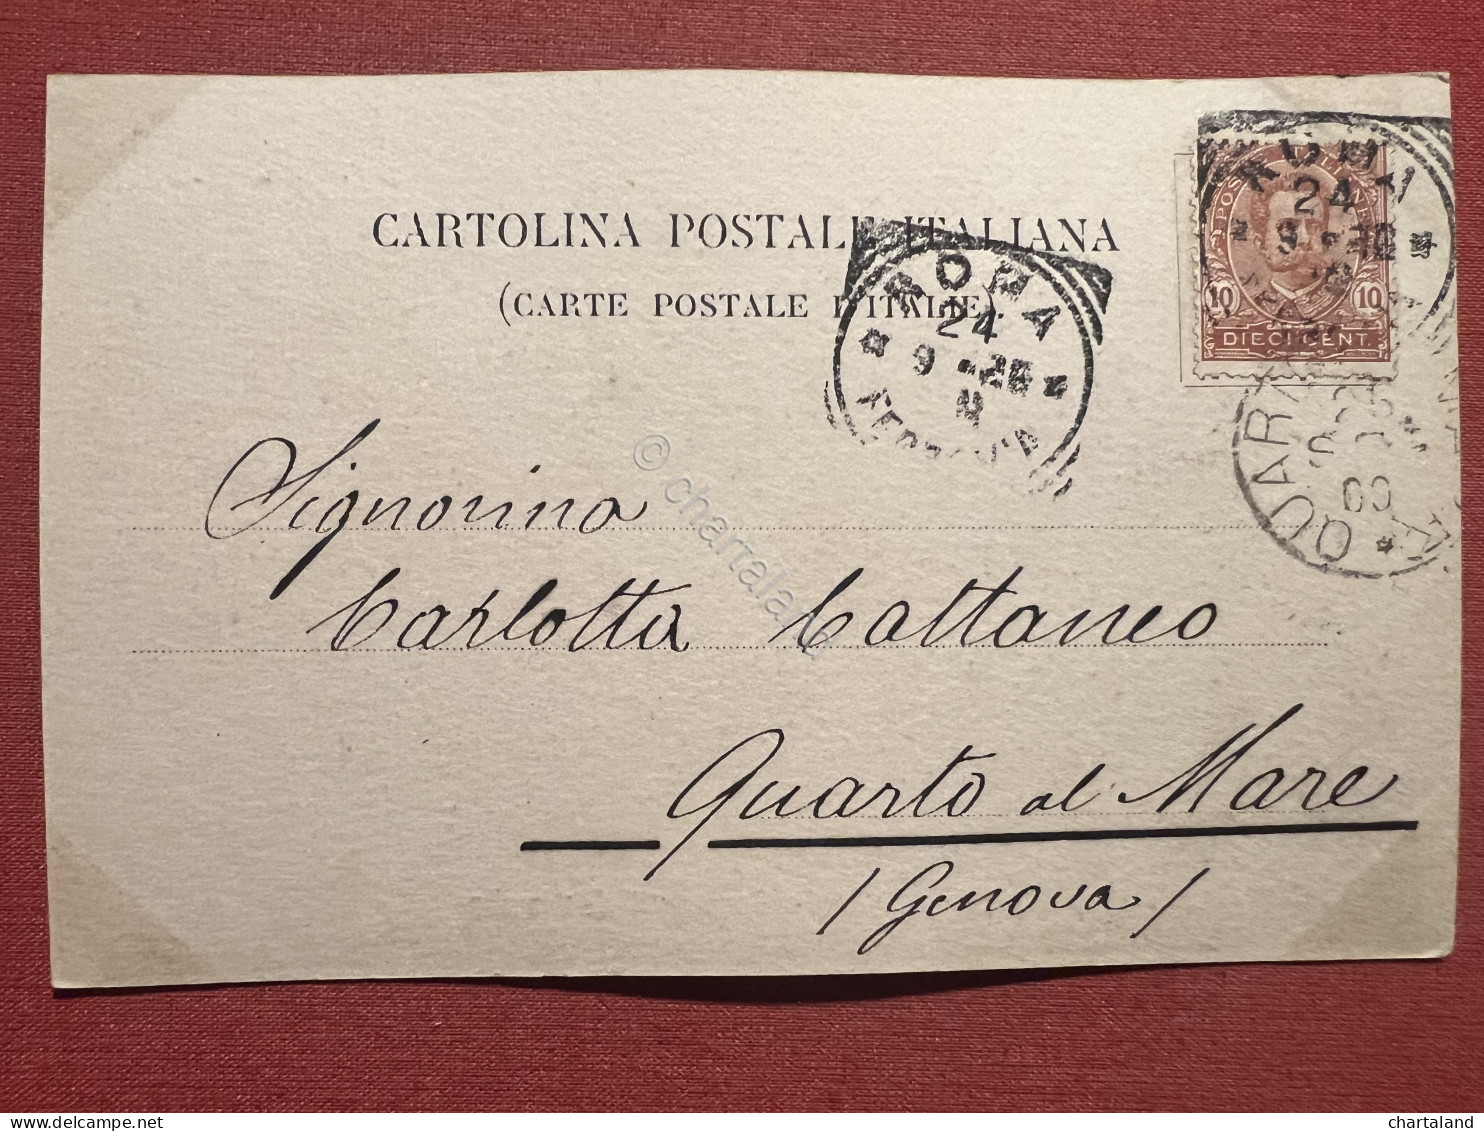 Cartolina - Saluti Da Roma - Via Appia Nuova - Acquedotti Di Claudio - 1909 - Other & Unclassified